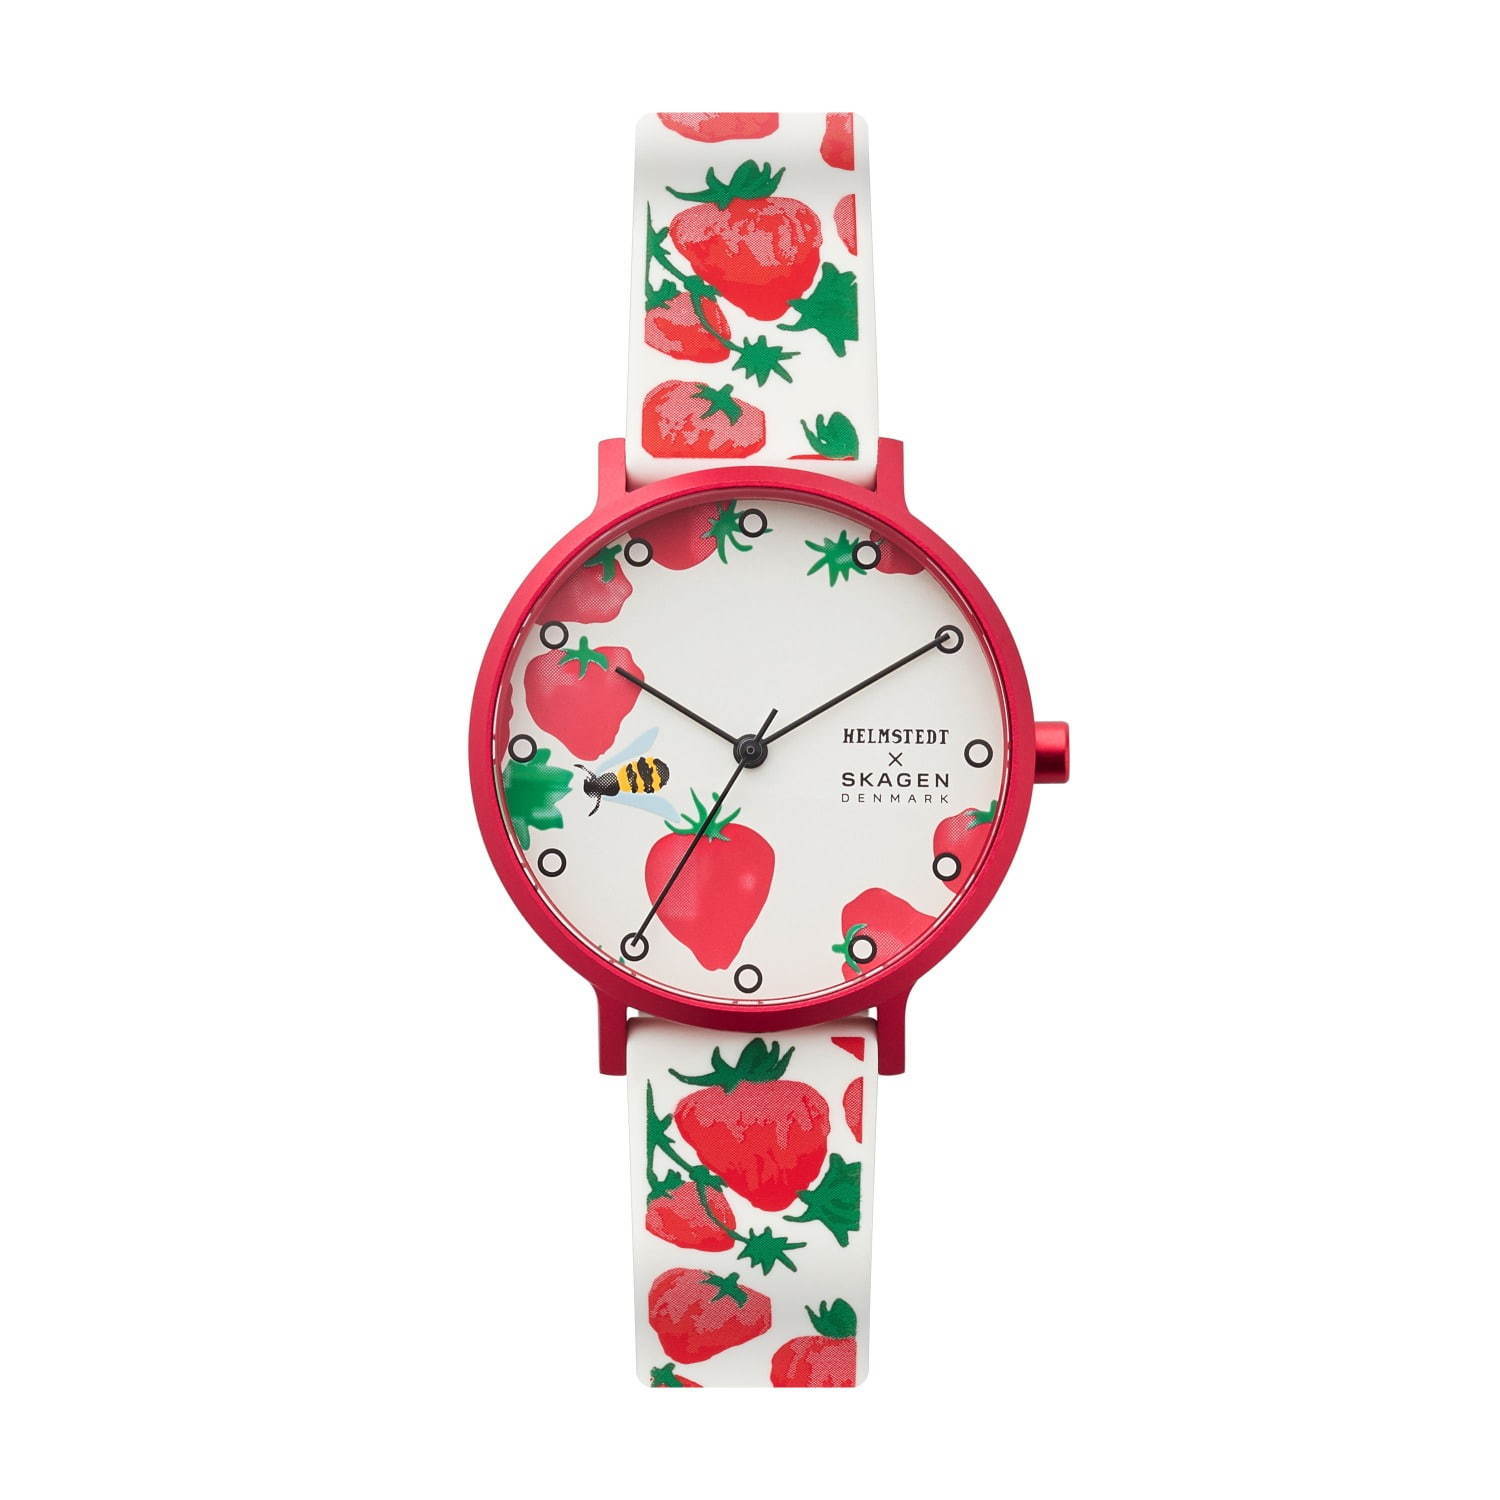 スカーゲン“苺＆ミツバチ”モチーフの腕時計、デンマーク発・ヘルムシュテットとコラボ | 写真